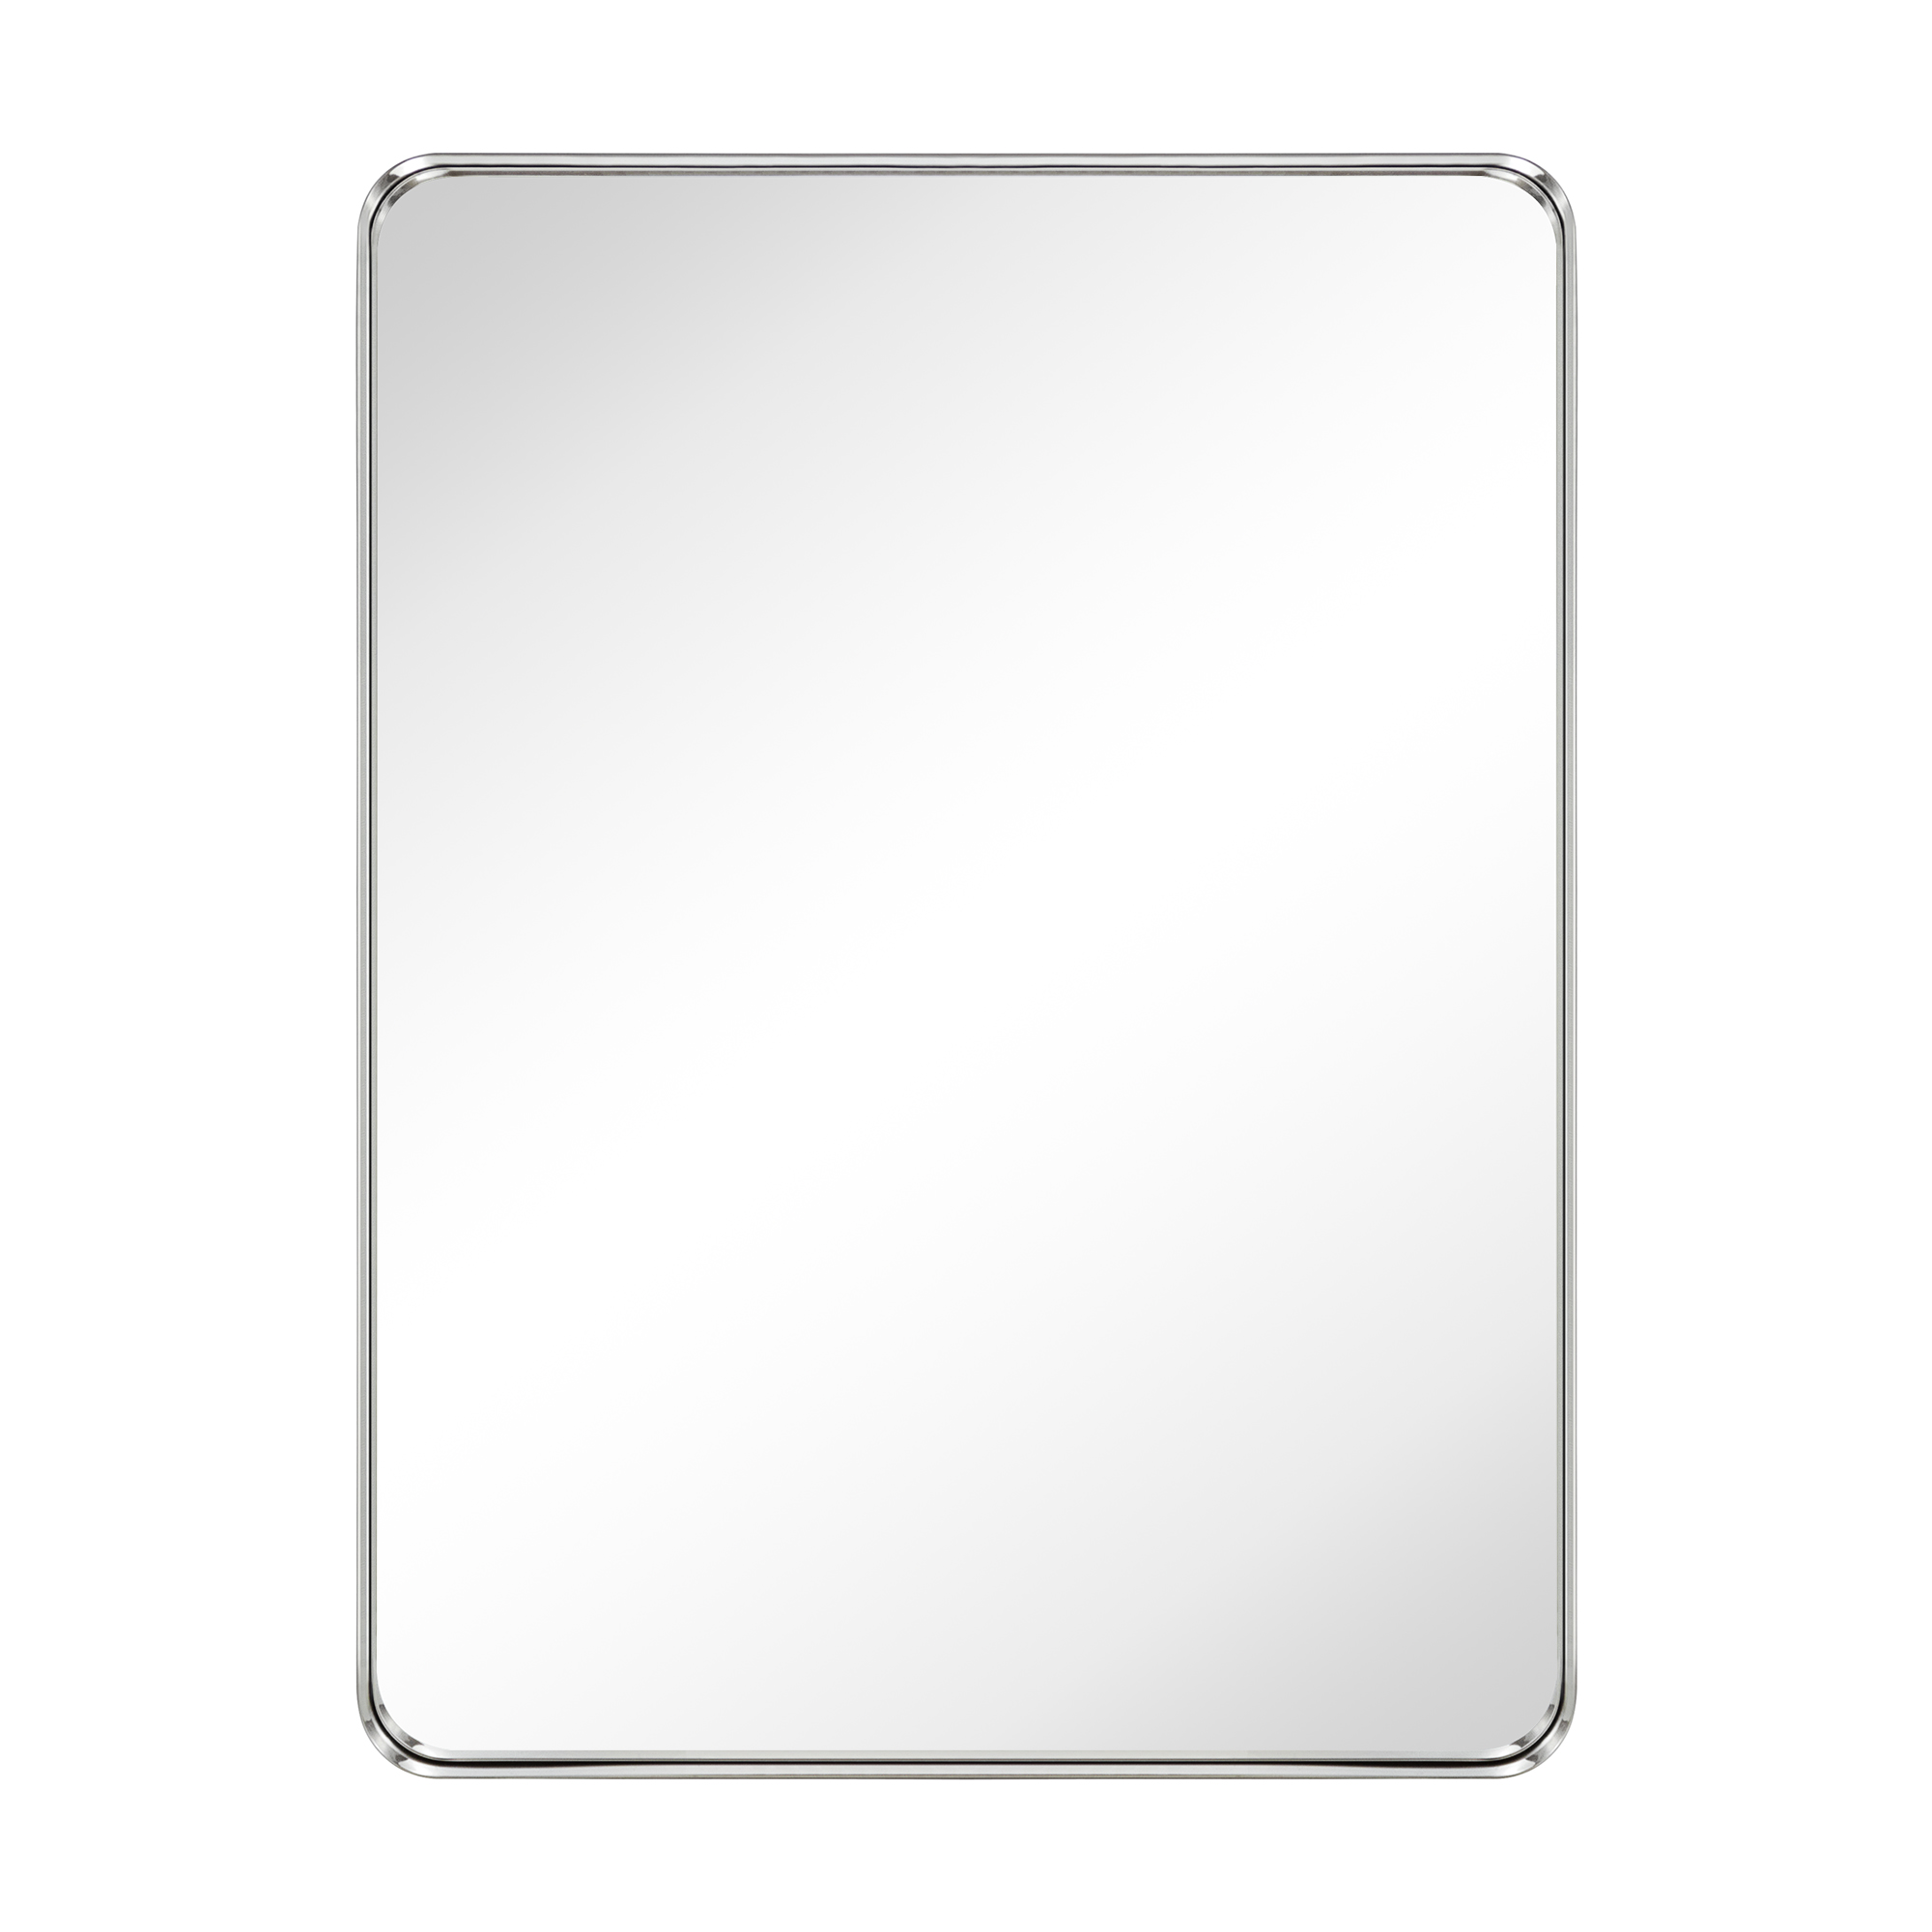 Arthers Stainless Steel Metal Bathroom Vanity Wall Mirror-30x40-Brushed Nickel